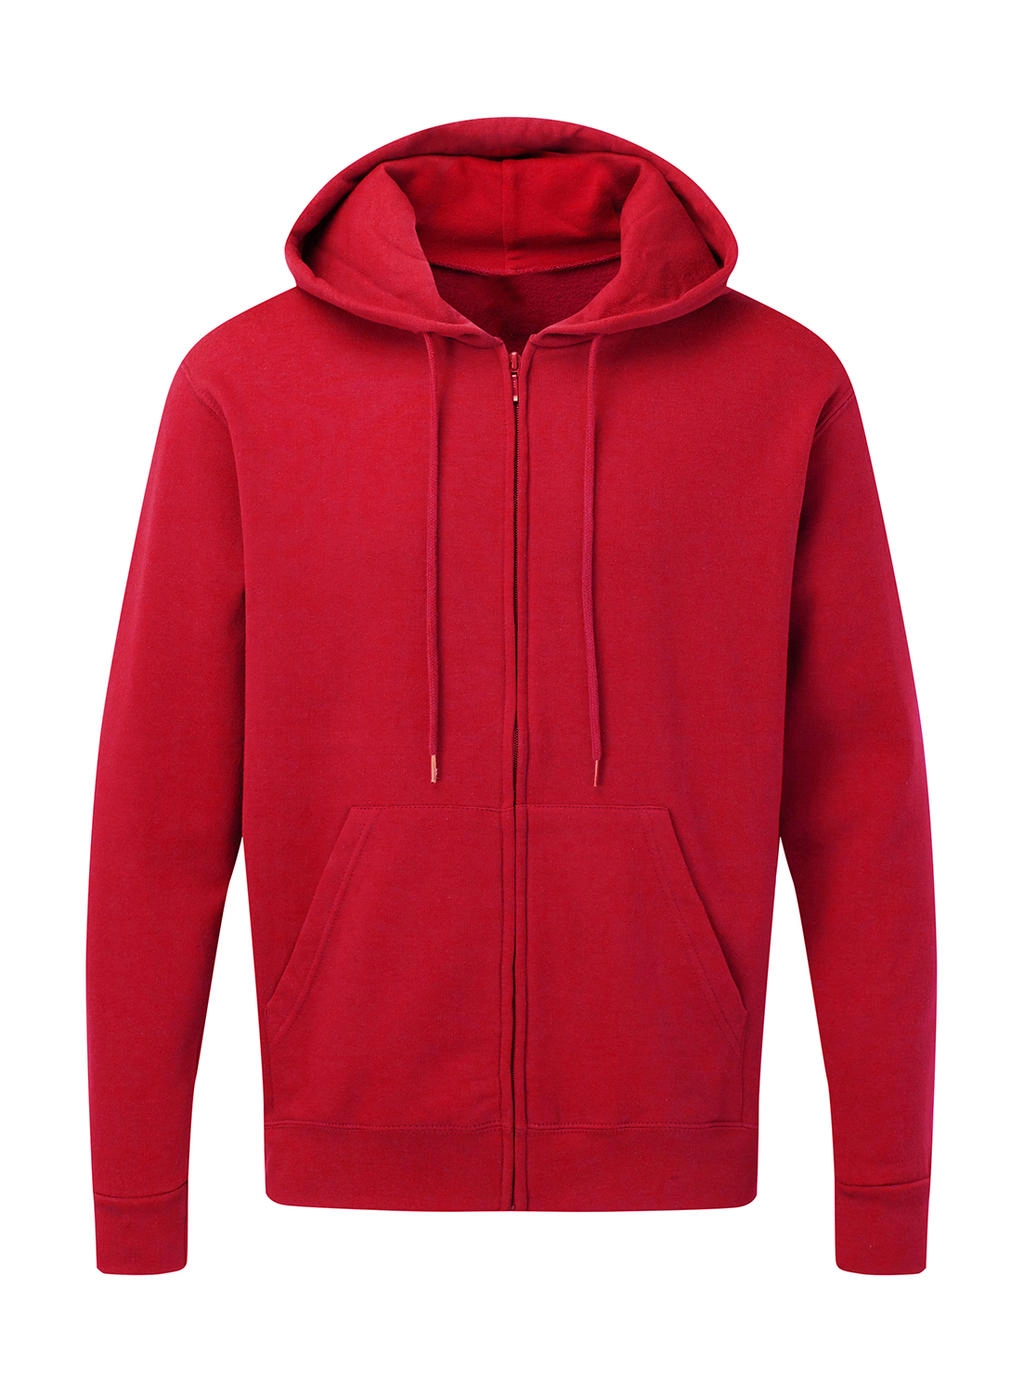 Hooded Full Zip Men zum Besticken und Bedrucken in der Farbe Red mit Ihren Logo, Schriftzug oder Motiv.